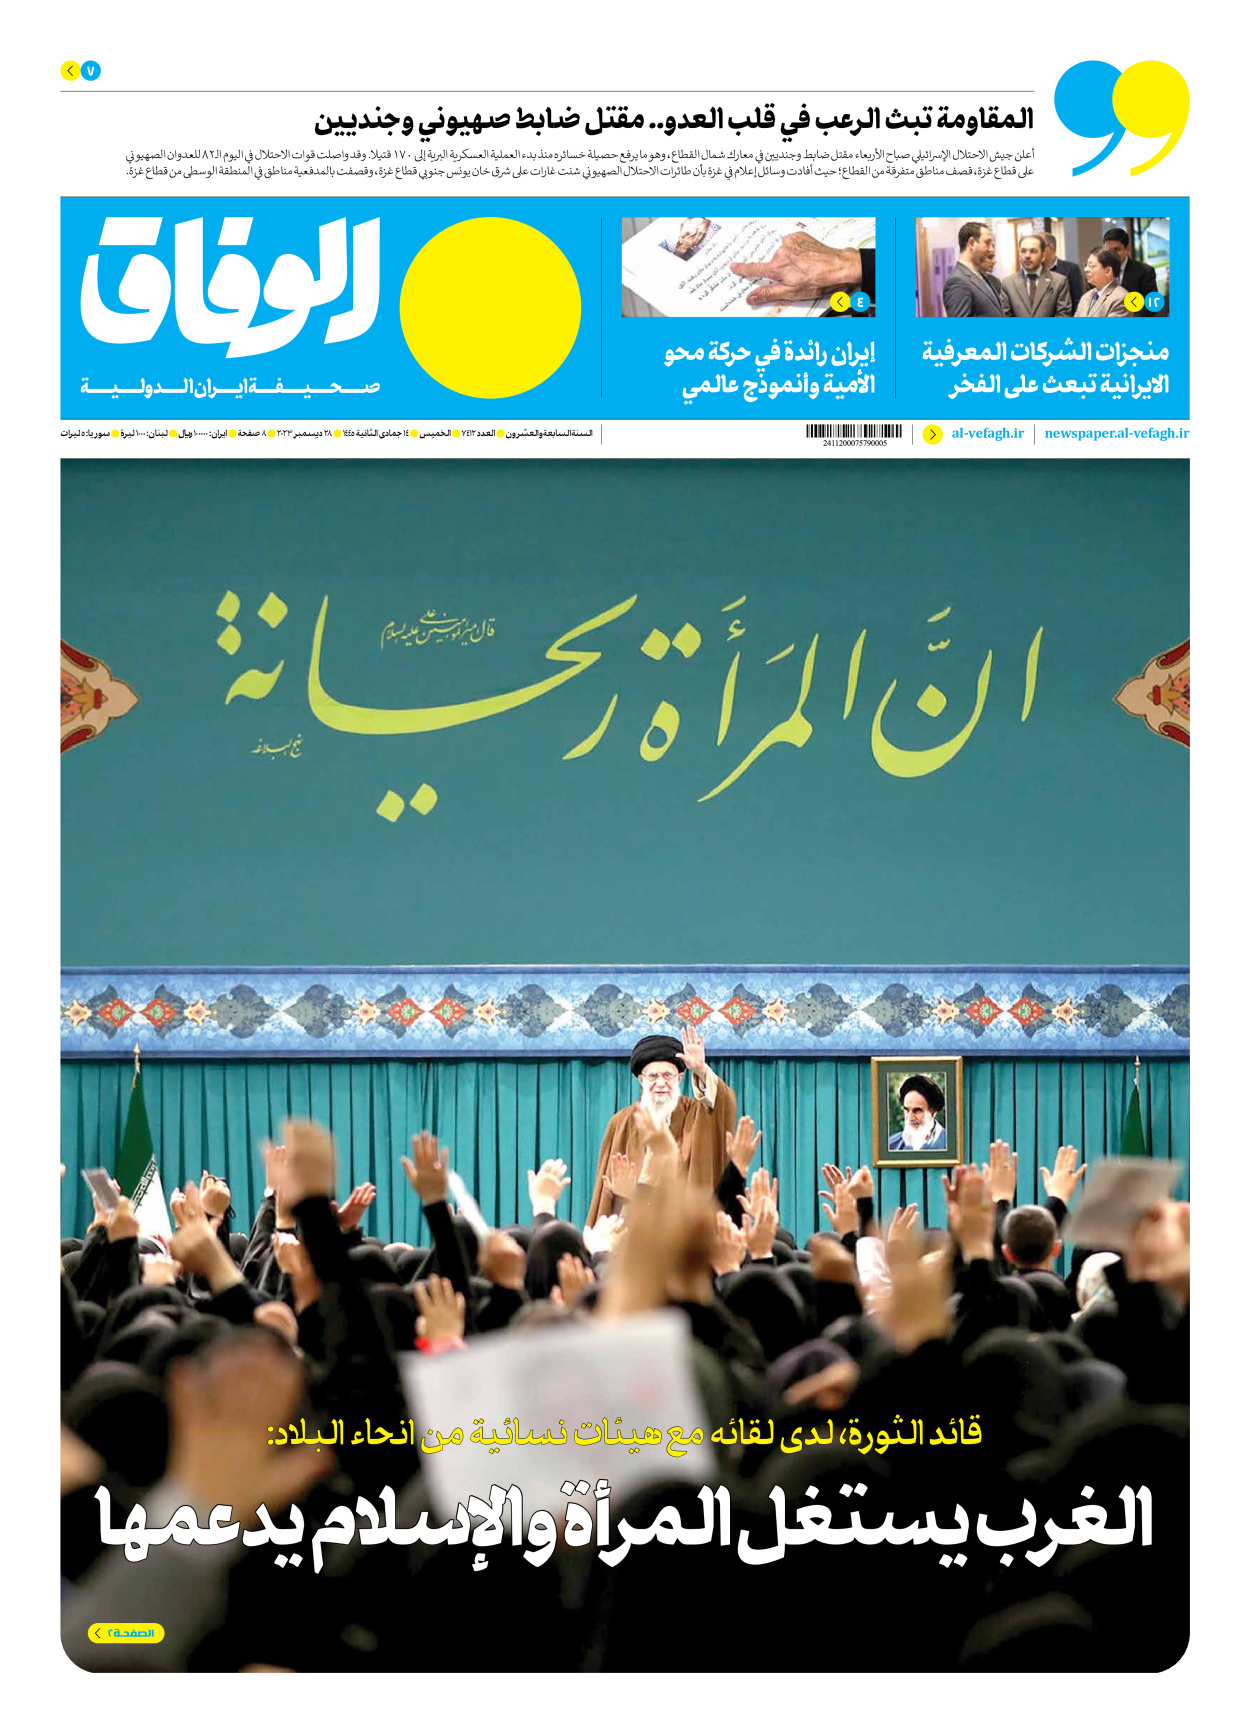 صحیفة ایران الدولیة الوفاق - العدد سبعة آلاف وأربعمائة واثنا عشر - ٢٨ ديسمبر ٢٠٢٣ - الصفحة ۱